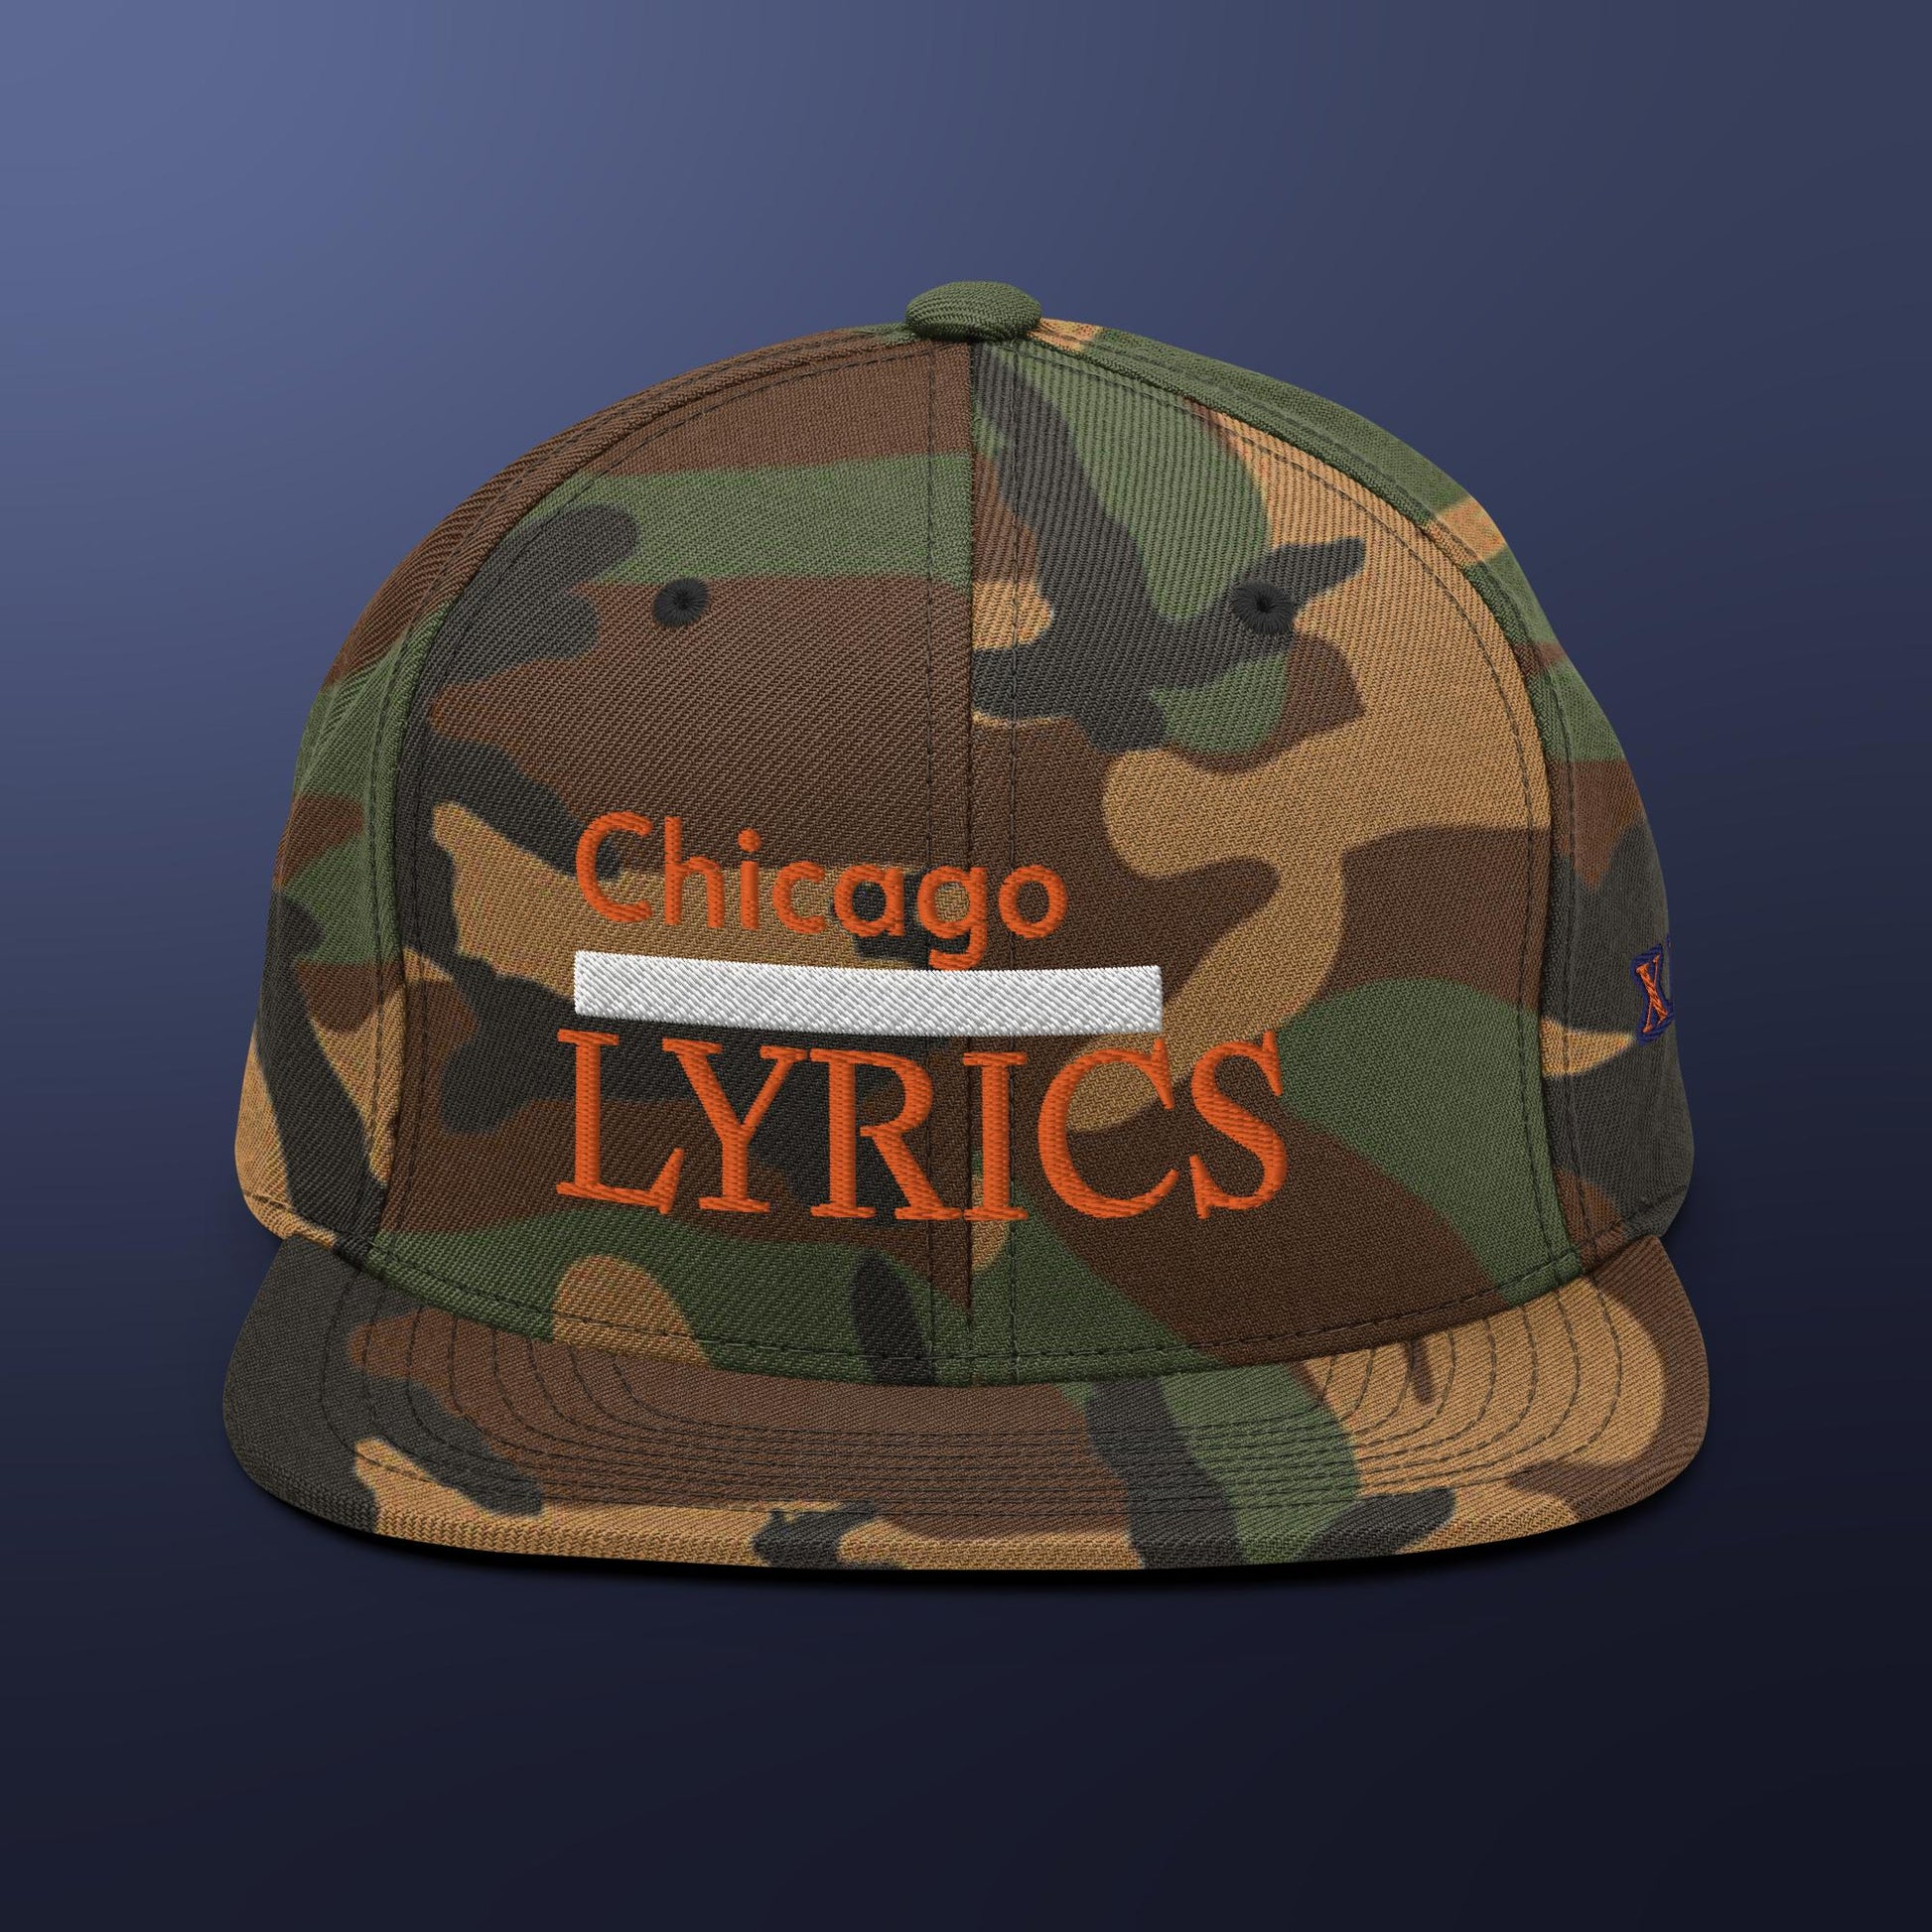 Chicago Lyrics Snapback Hat - lyricxart